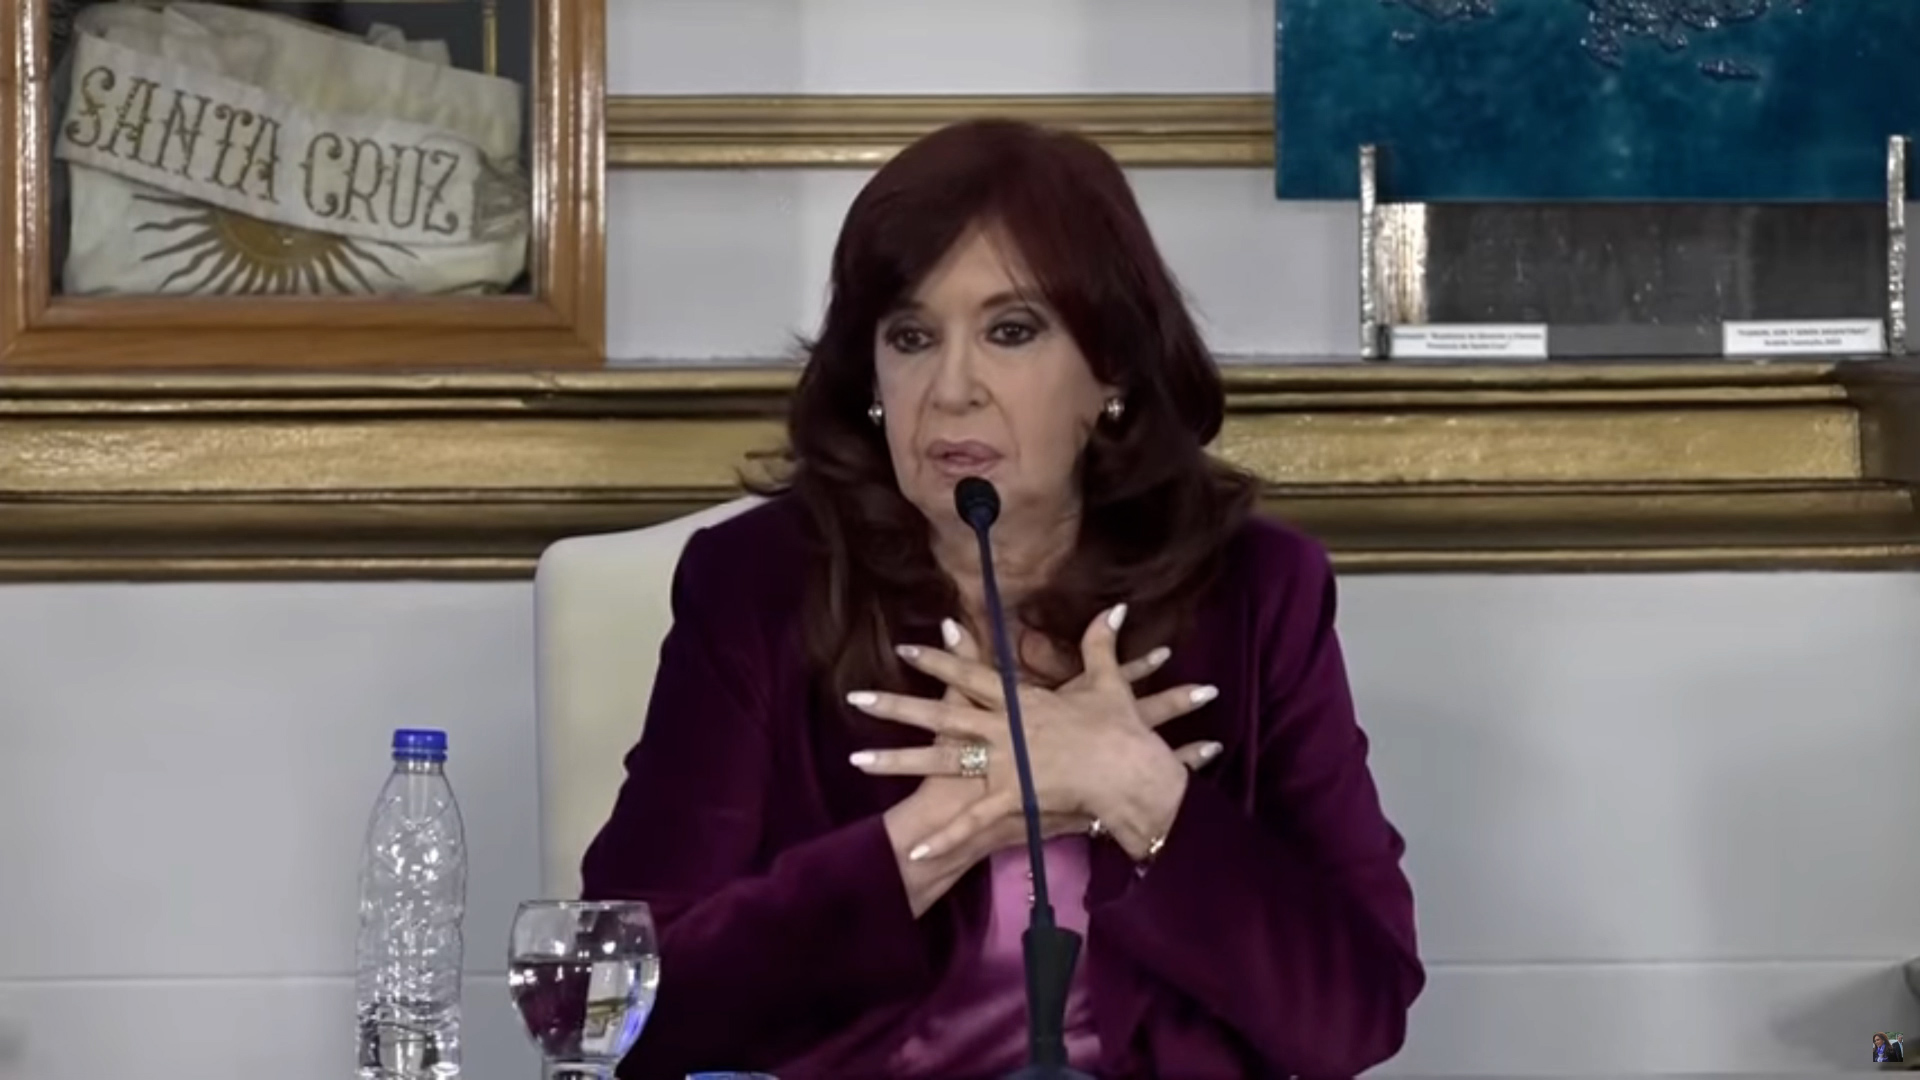 A Cristina Kirchner no le parece apropiado cruzarse con "pacientes en estado psiquiátrico" en los pasillos de un hospital